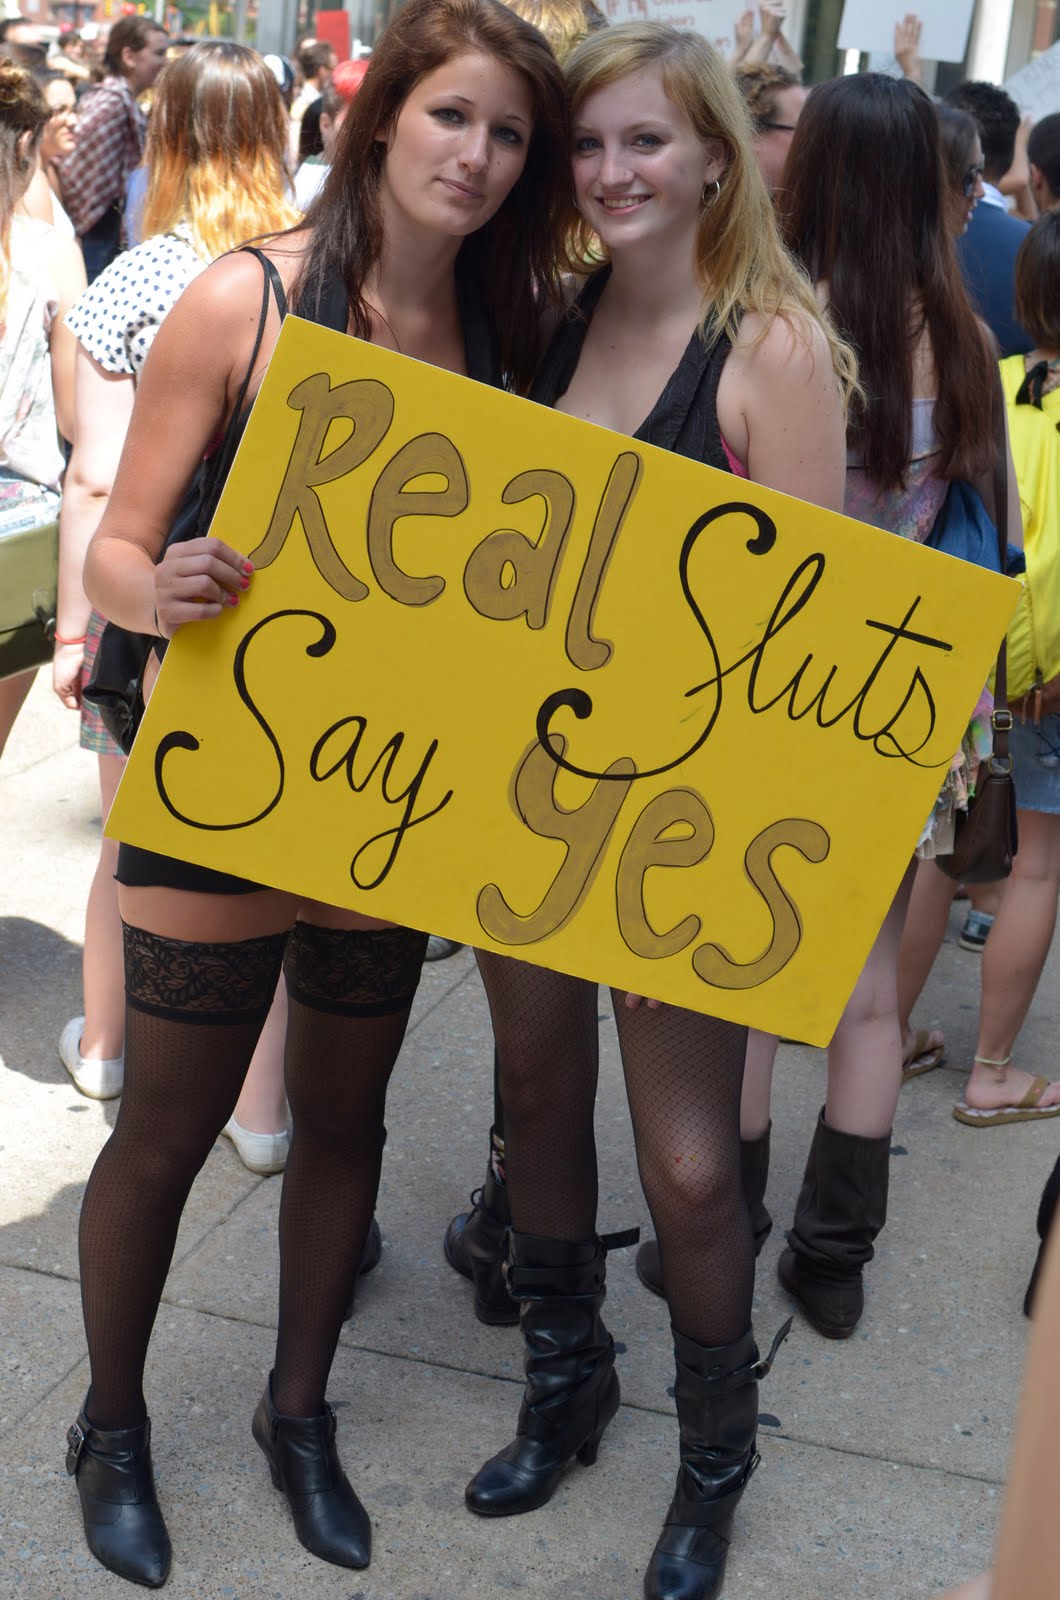 The Sluts From Slutwalk Business Insider